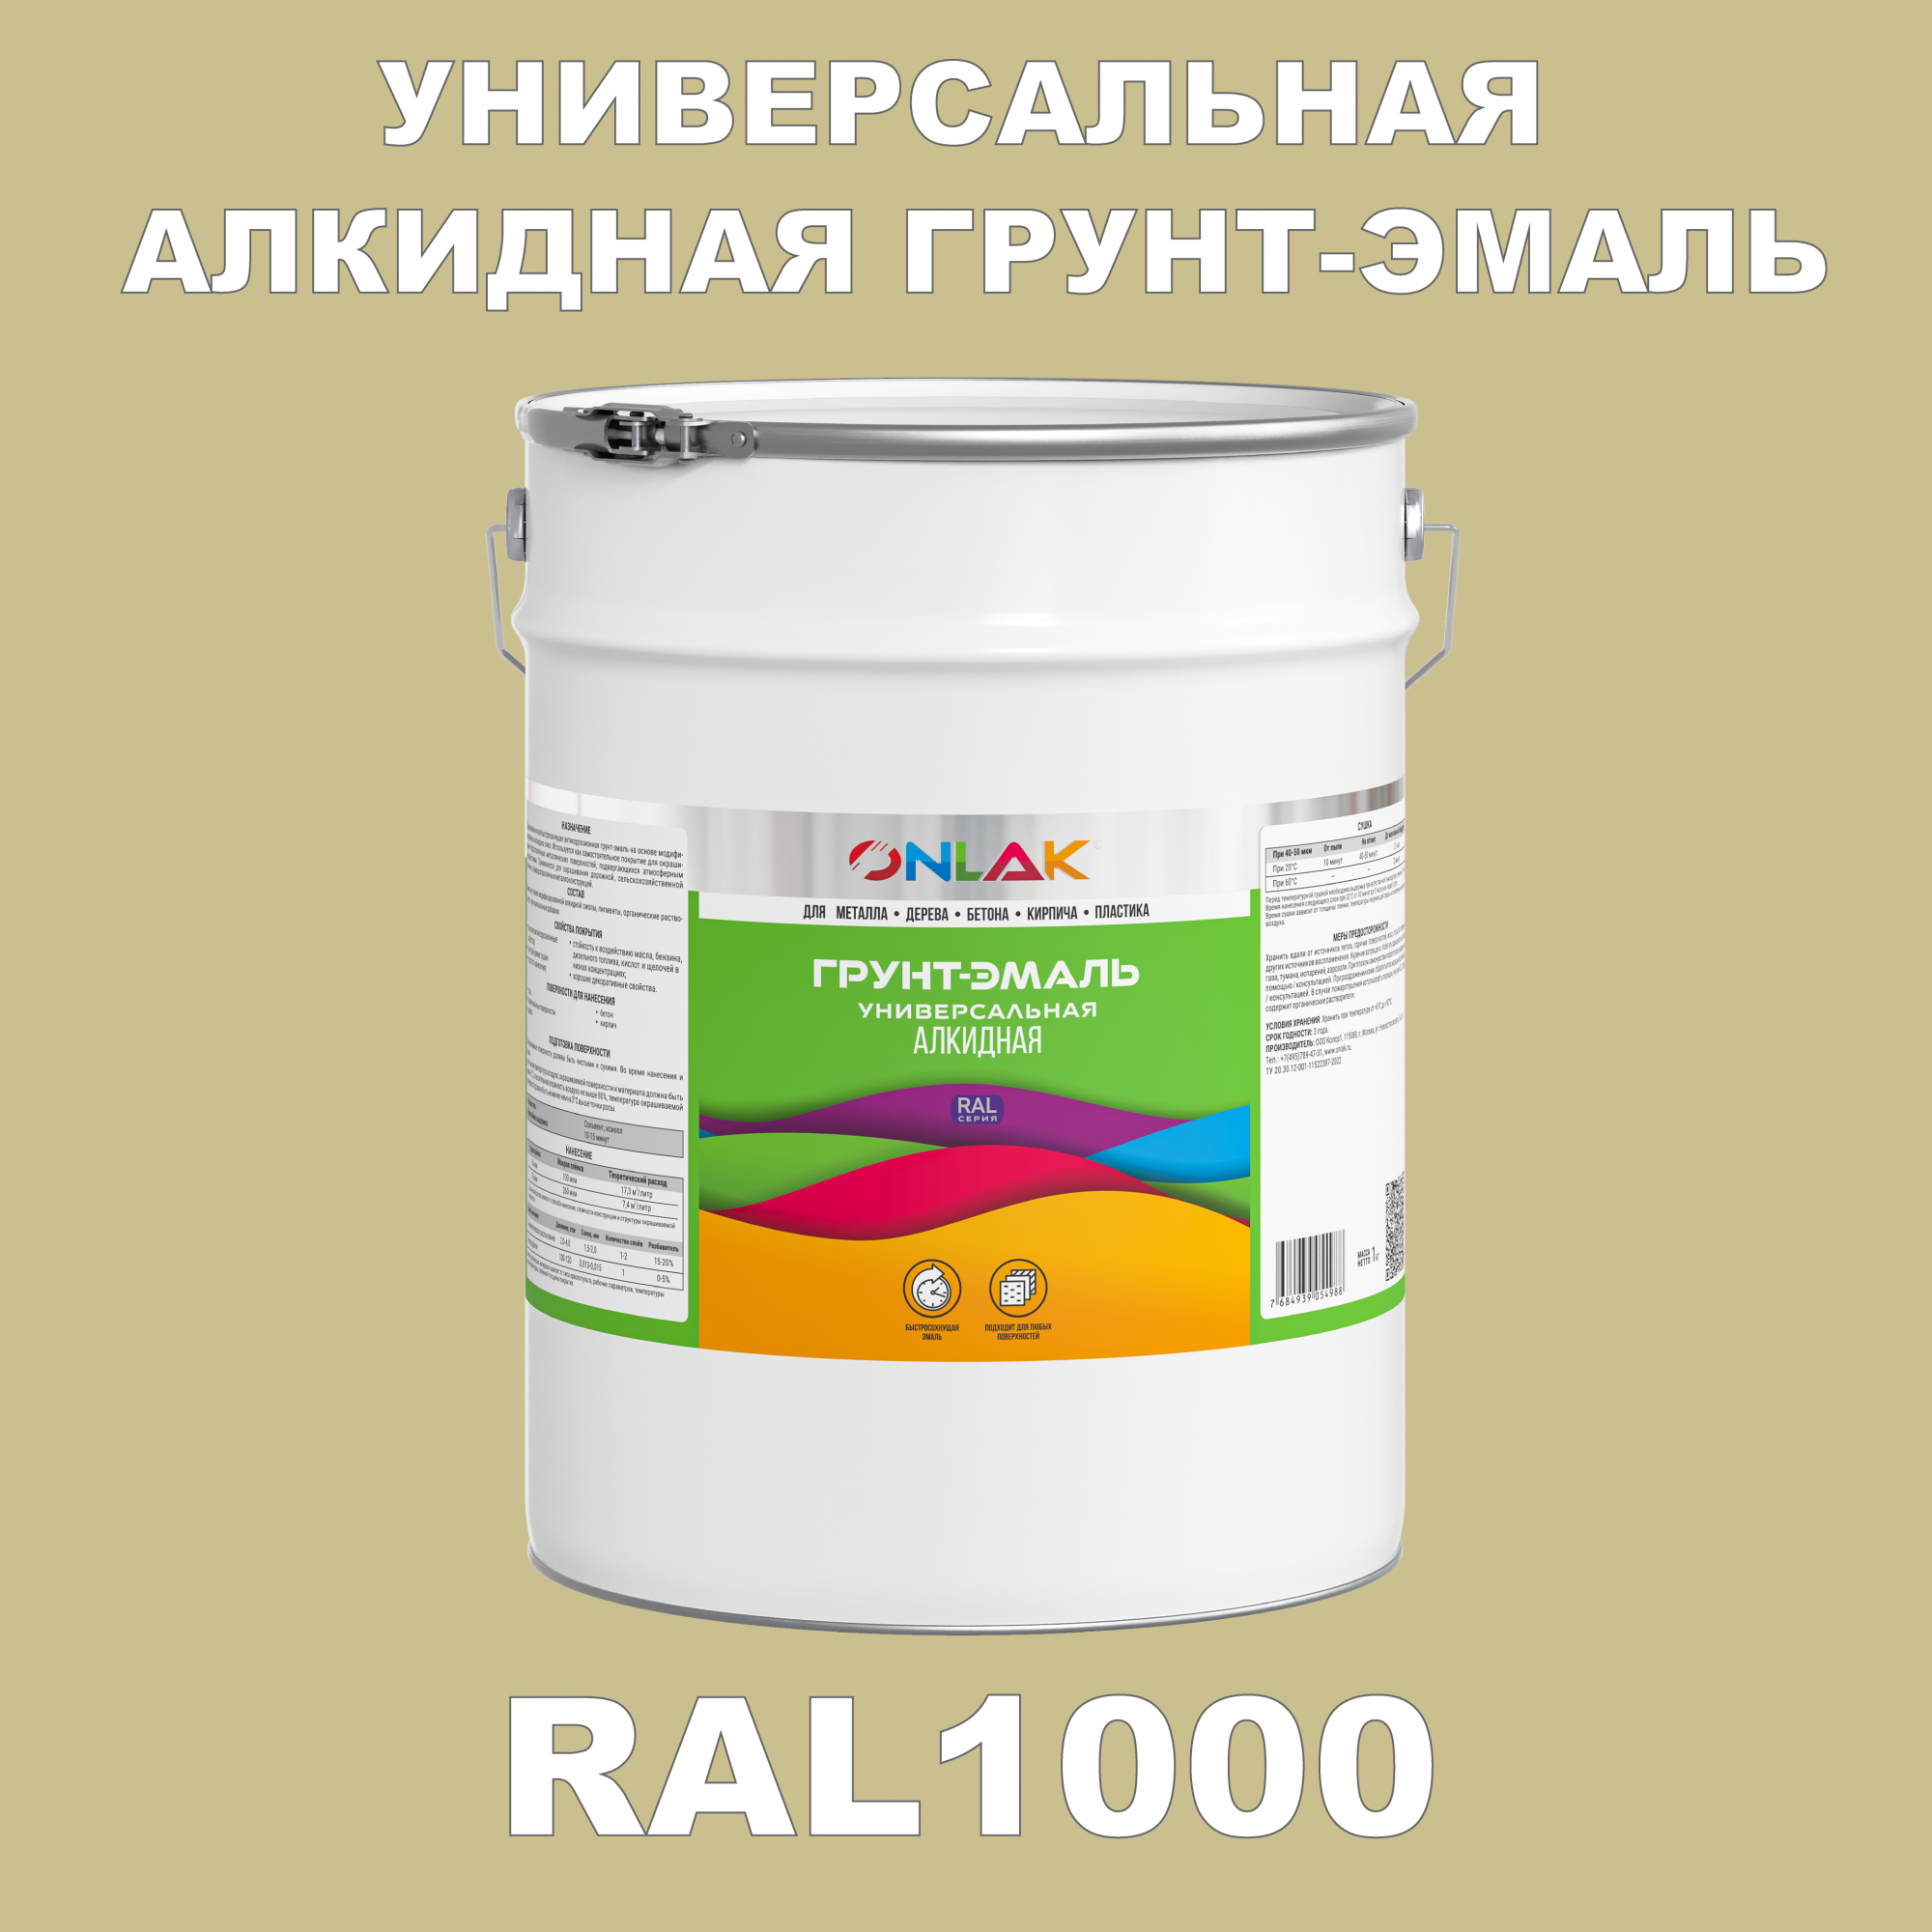 Грунт-эмаль ONLAK 1К RAL1000 антикоррозионная алкидная по металлу по ржавчине 20 кг грунт эмаль yollo по ржавчине алкидная серая 0 9 кг